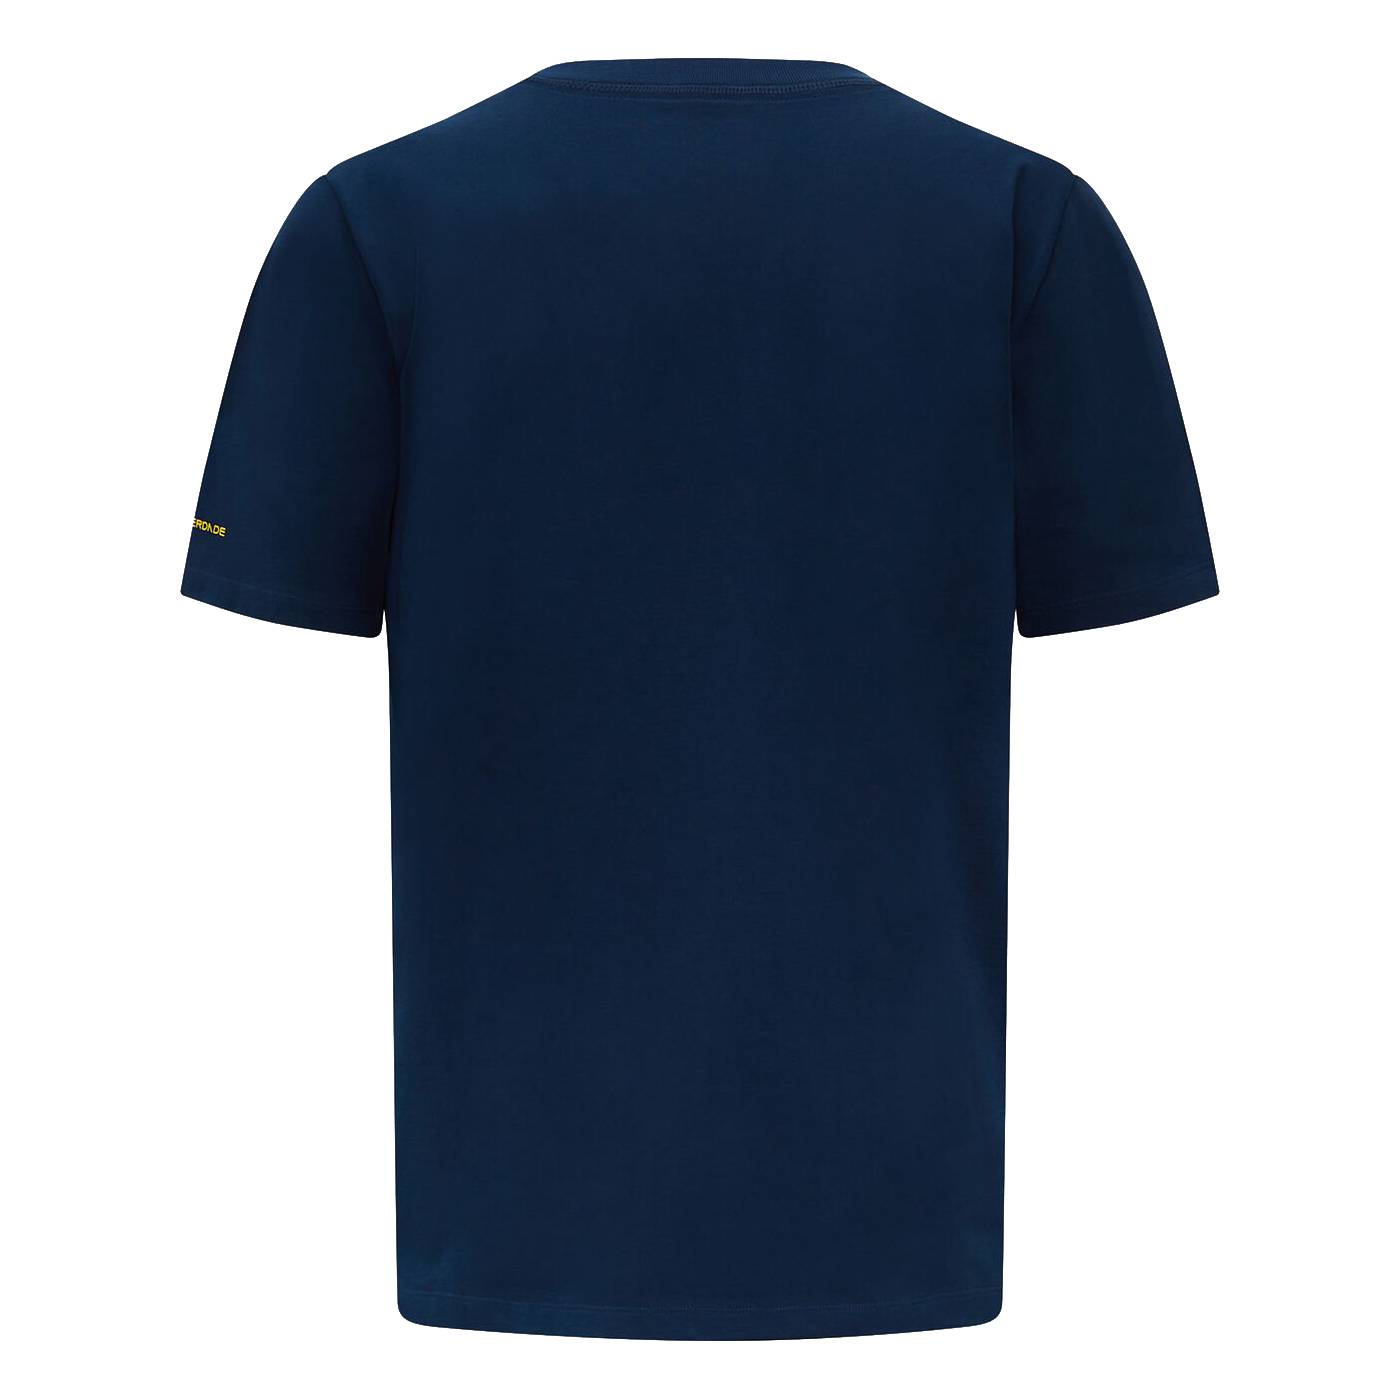 Ayrton Senna T-Shirt "Doppel S" - blau